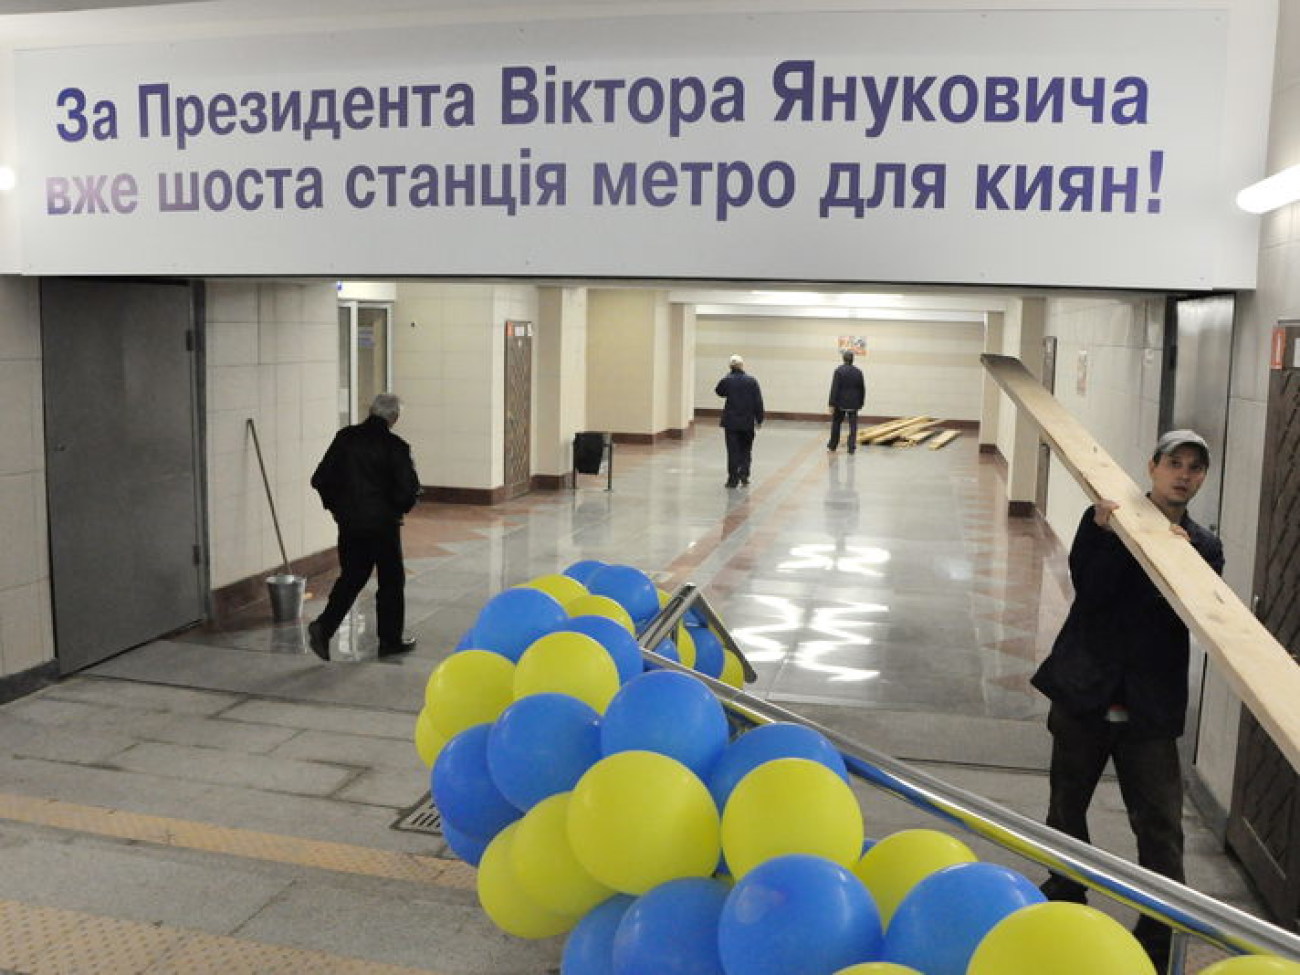 В День освобождения столицы киевлянам подарили &#171;Теремки&#187;, 6 ноября 2013г.